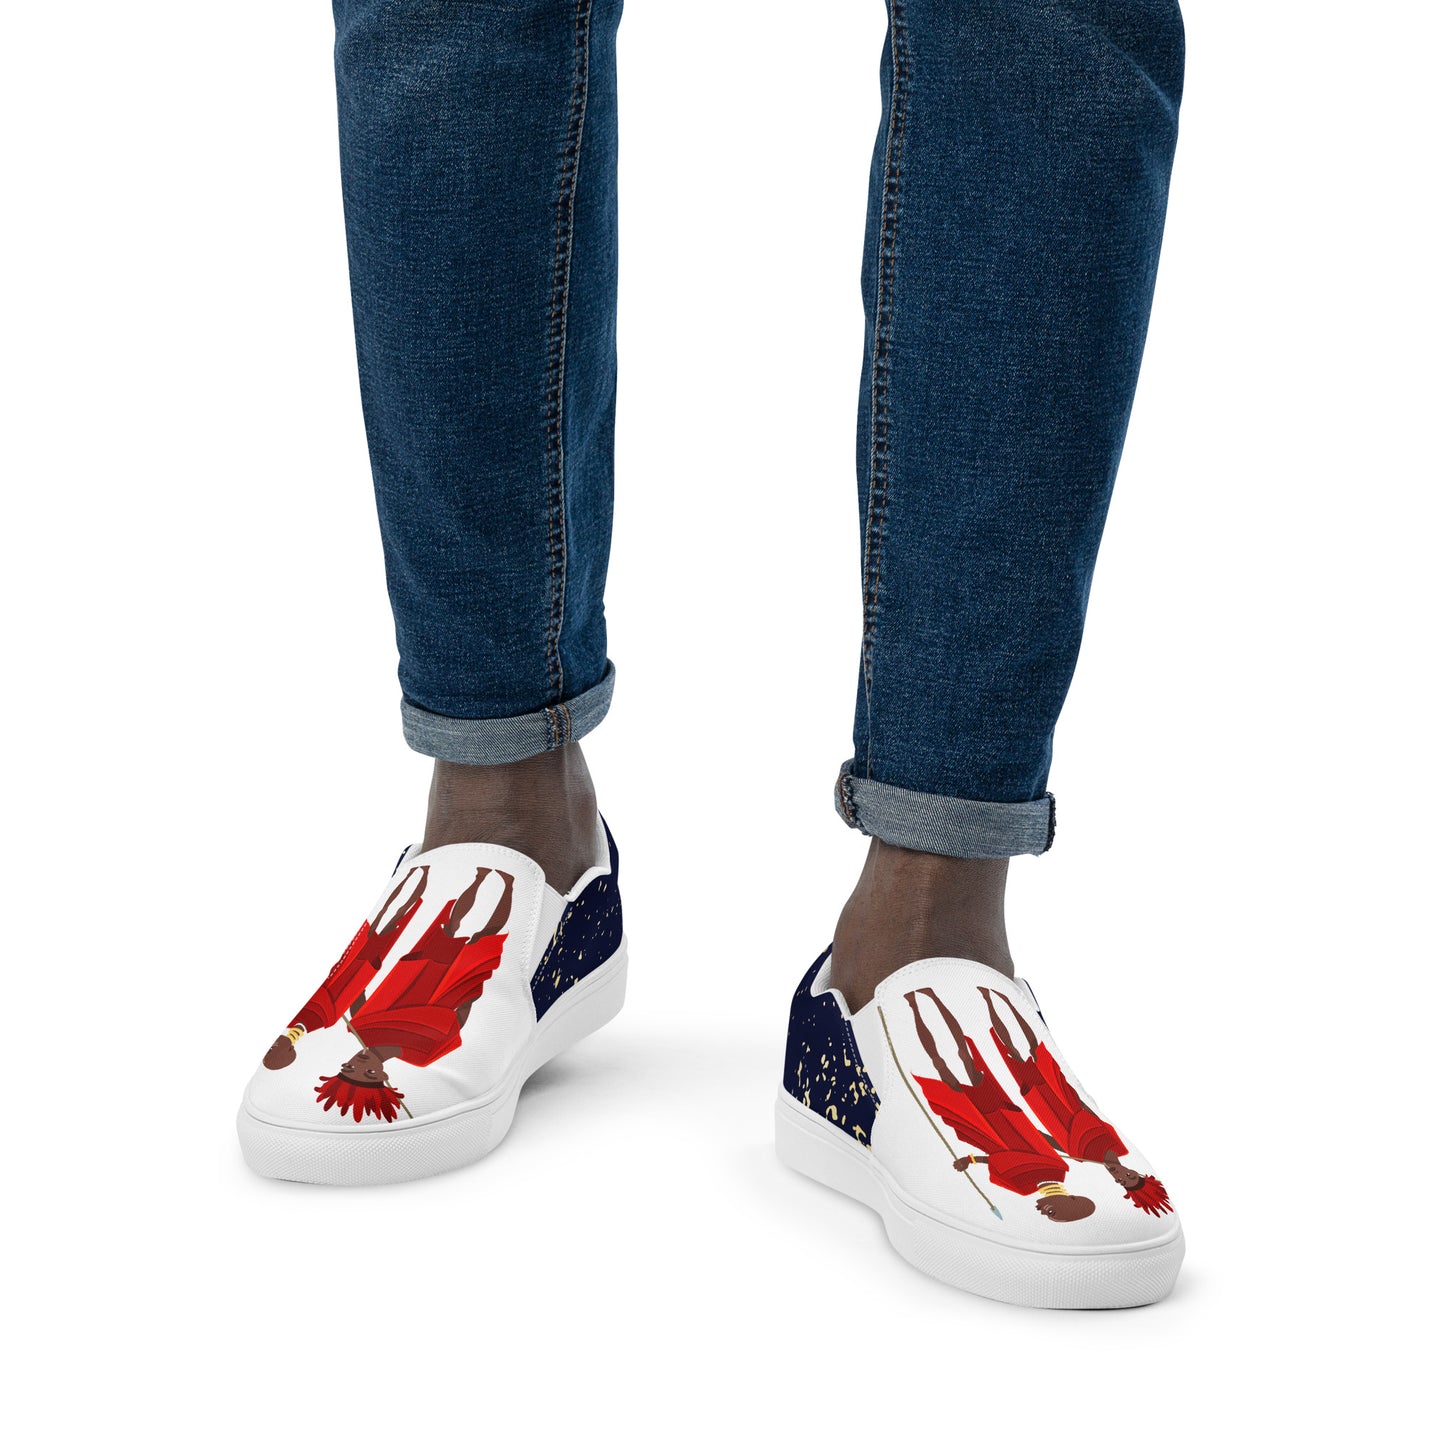 Agojie Jeans Men’s Slip-On Canvas Shoes